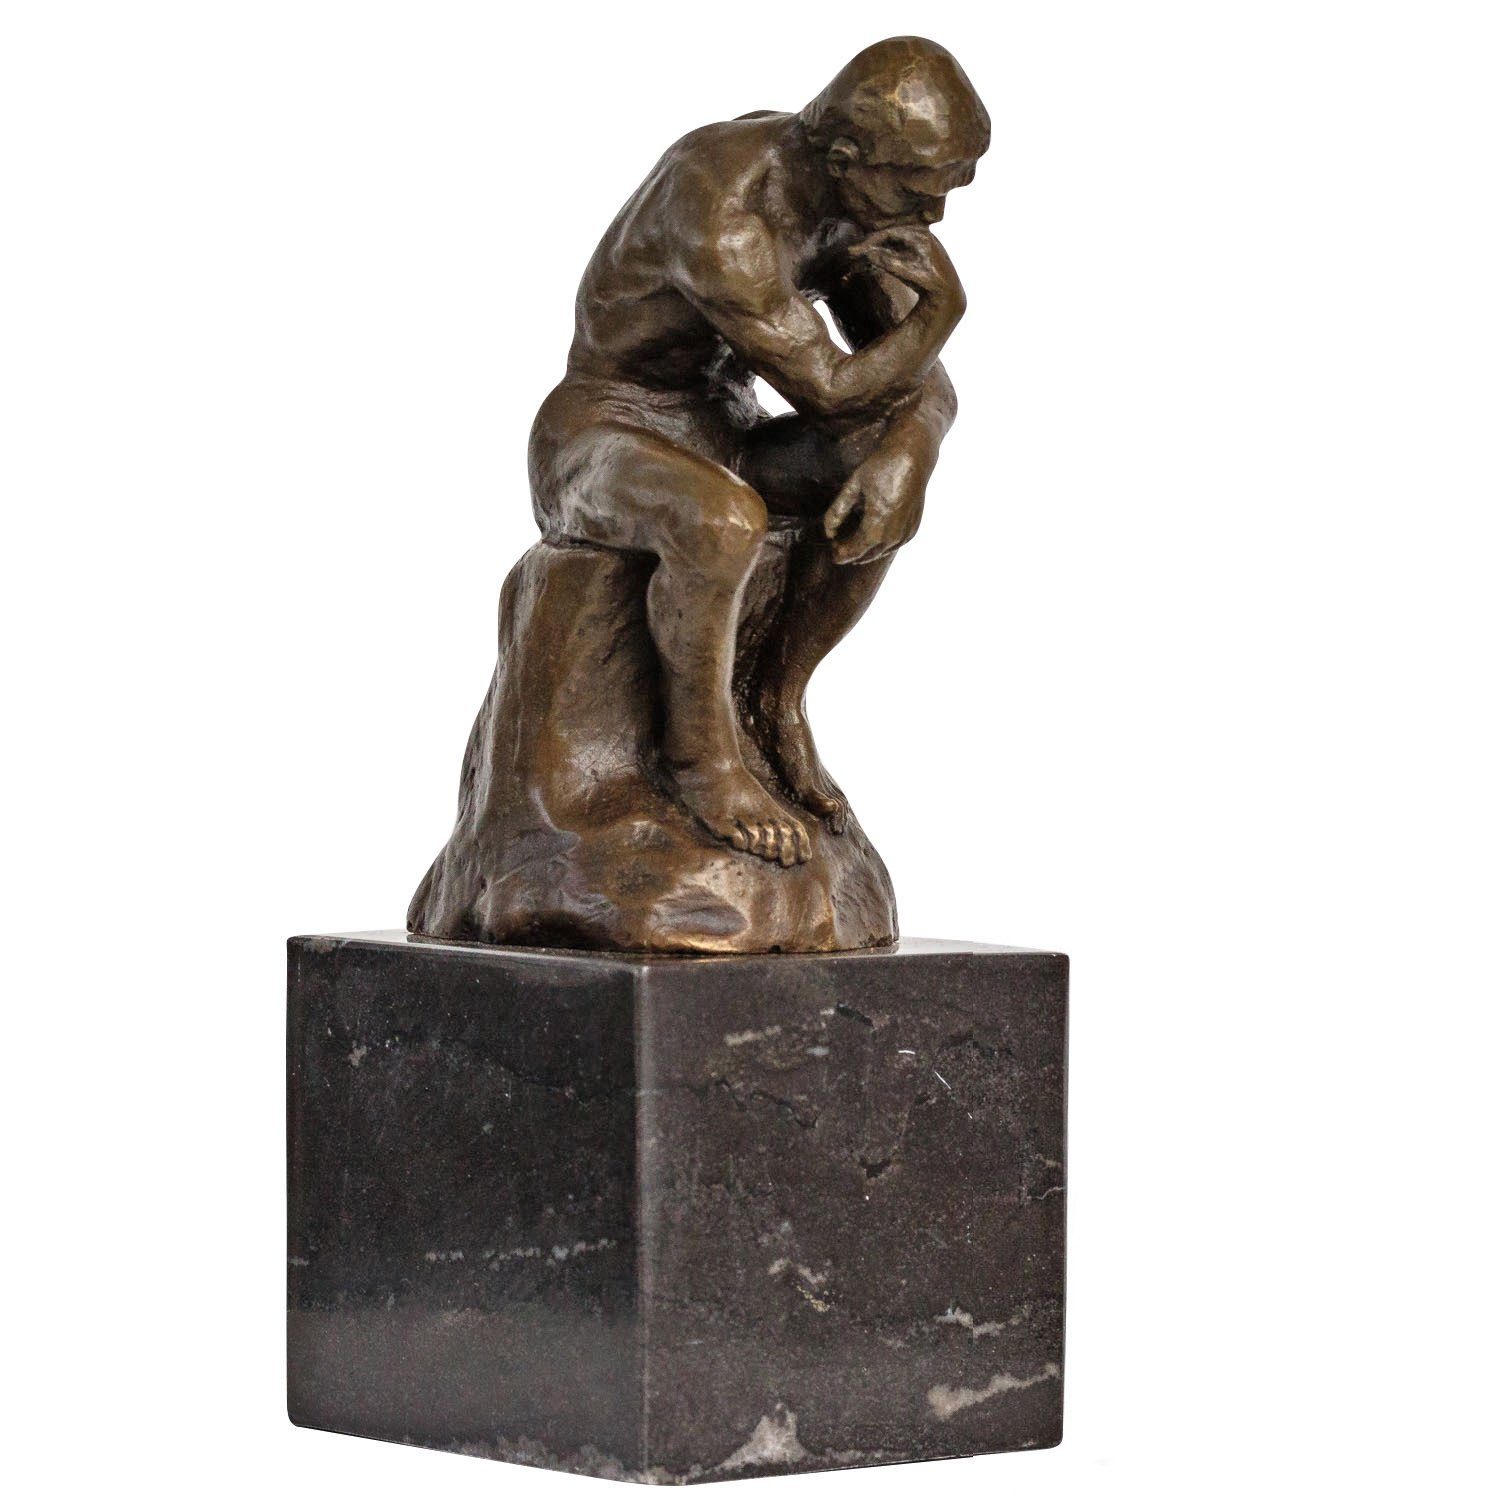 Aubaho Skulptur Bronze der Denker Mann Bronzeskulptur Bronzefigur nach Rodin Skulptur